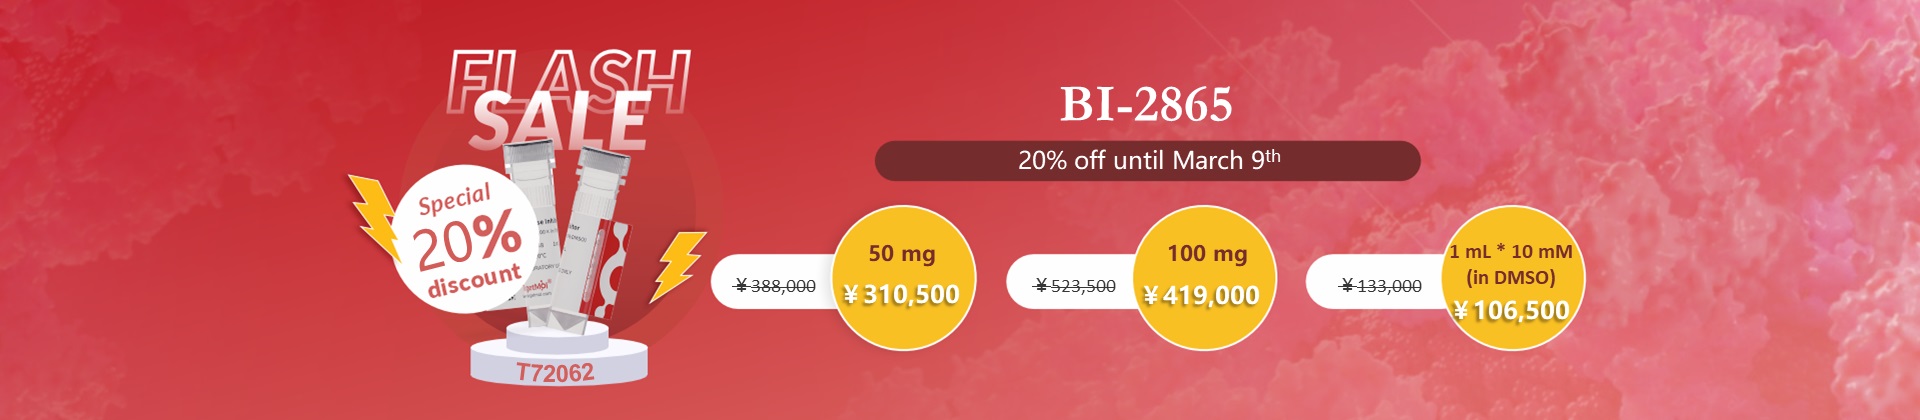 BI-2865 Special 80% discount